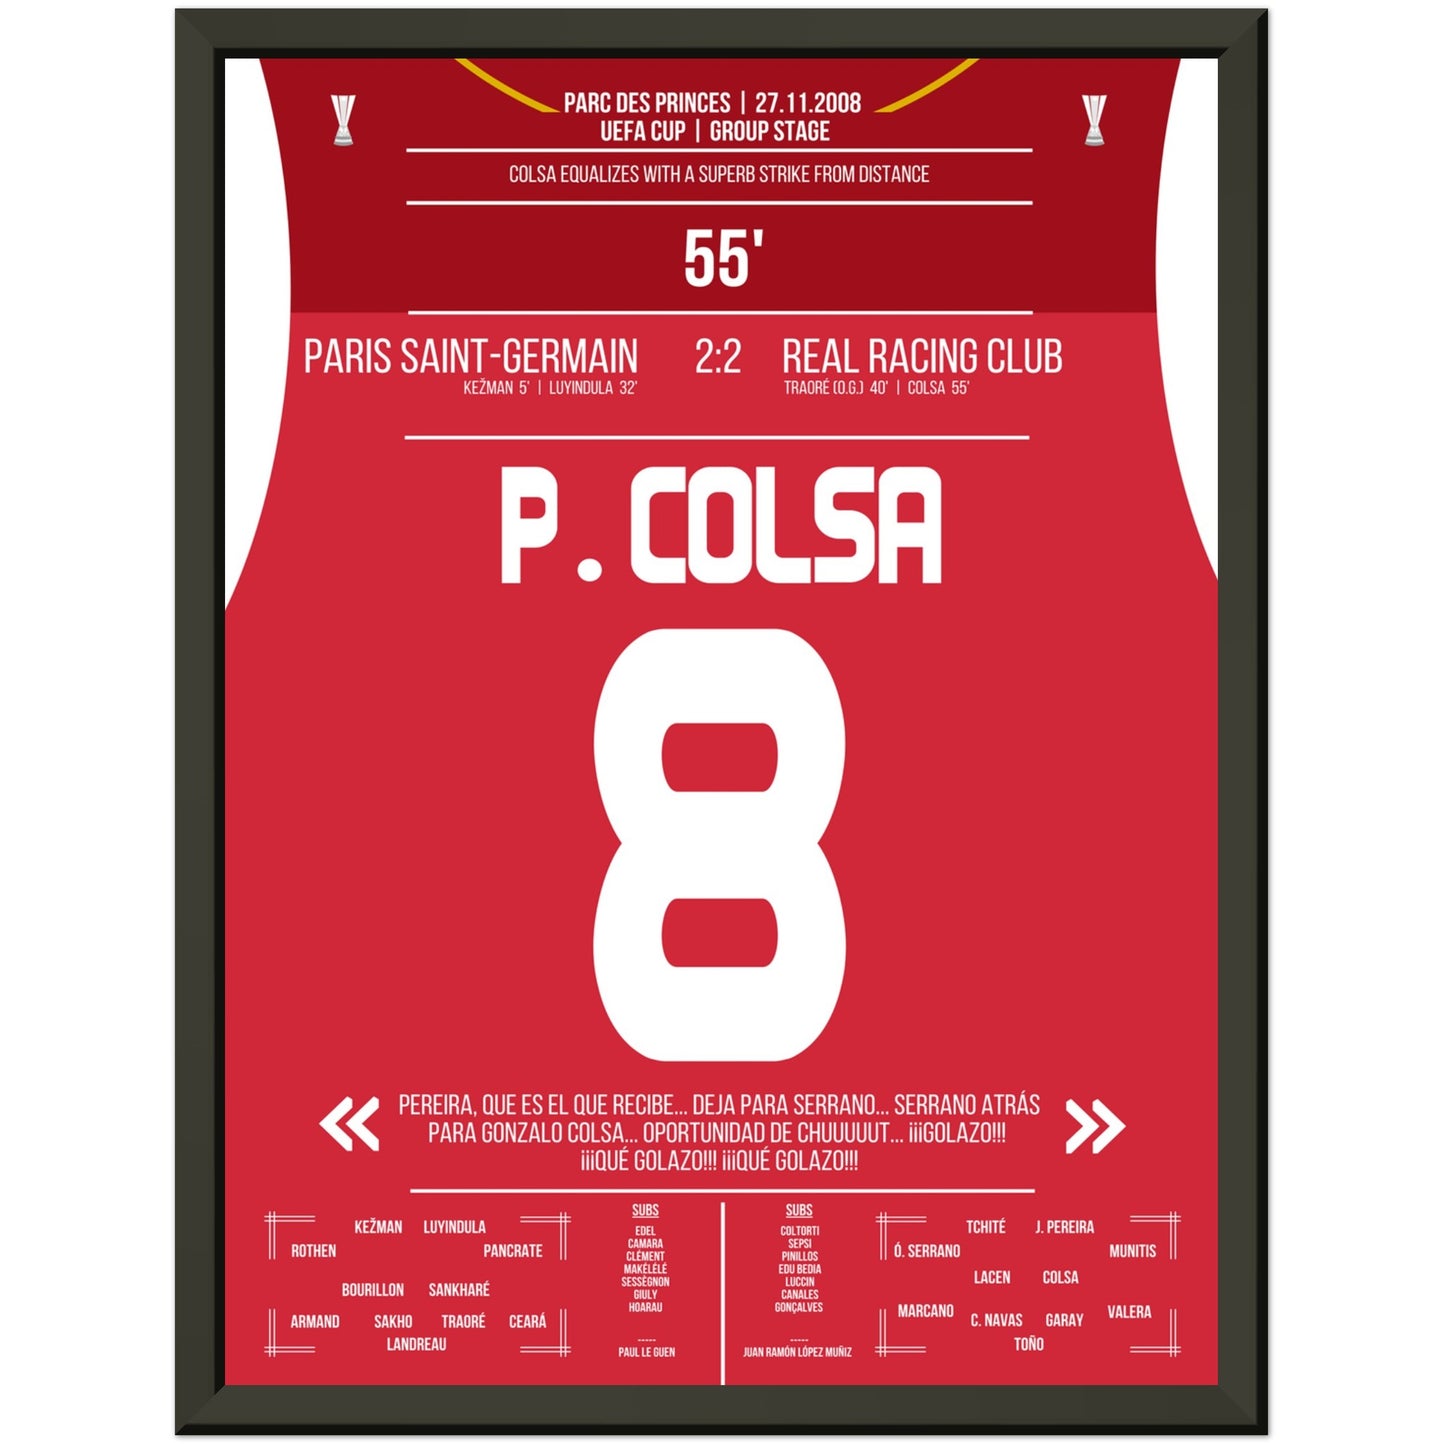 Colsa's Traumtor aus der Distanz gegen PSG in 2008